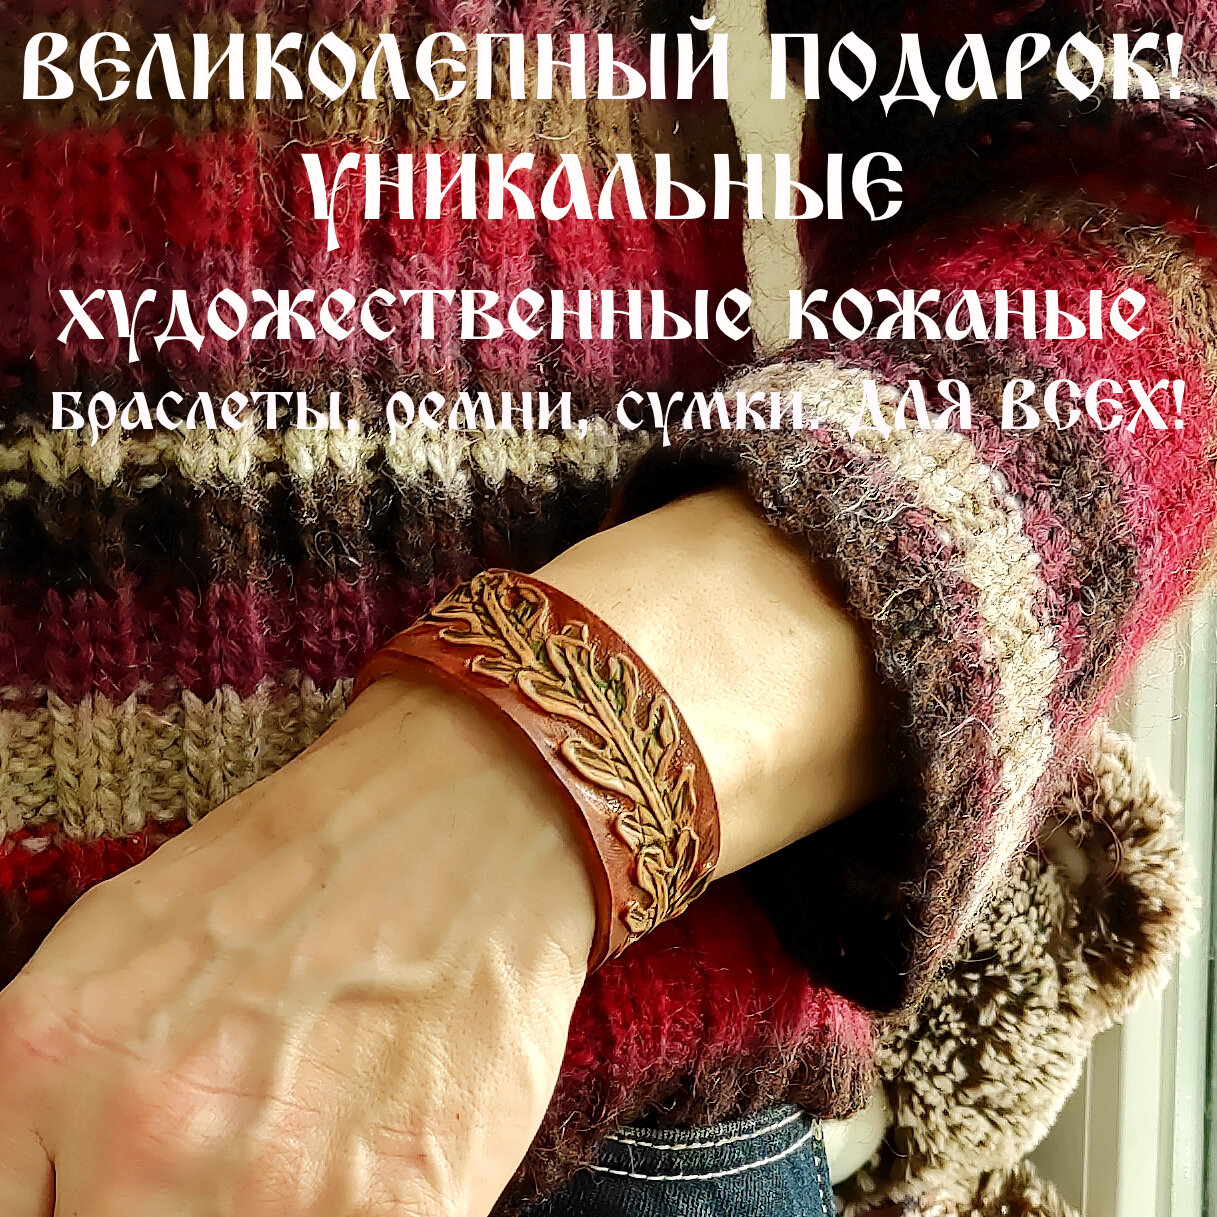 Славянский оберег, жесткий браслет Браслет кожаный ручной работы "Дубовые Листочки" УЗКИЙ 25 мм шириной